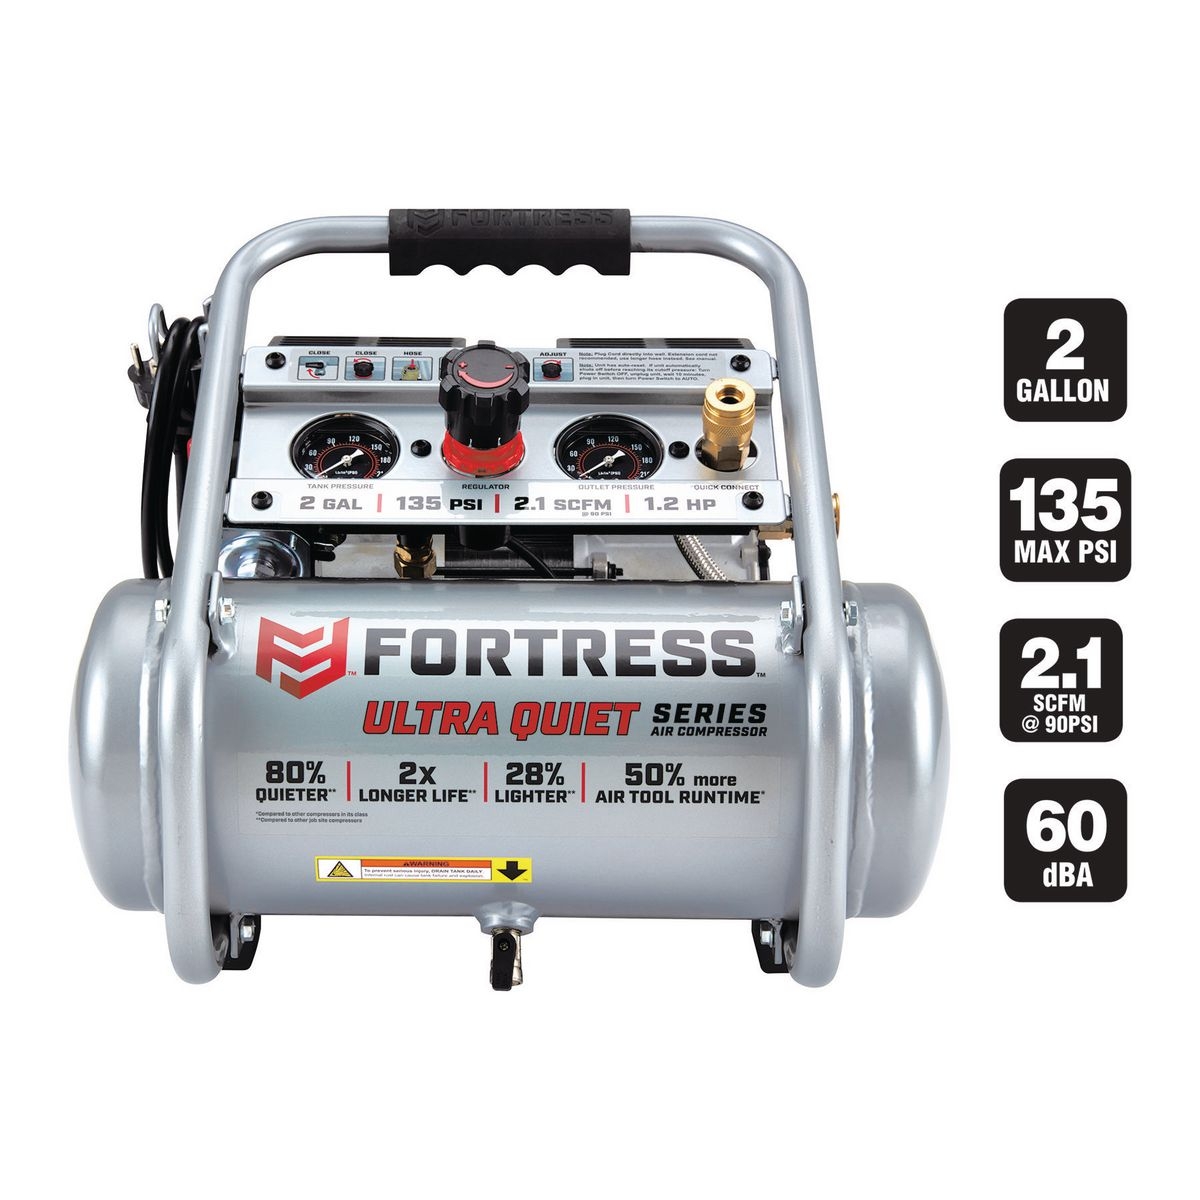 FORTRESS 2 Gallon 135 PSI Ultra Quiet Hand Carry Jobsite Air Compressor